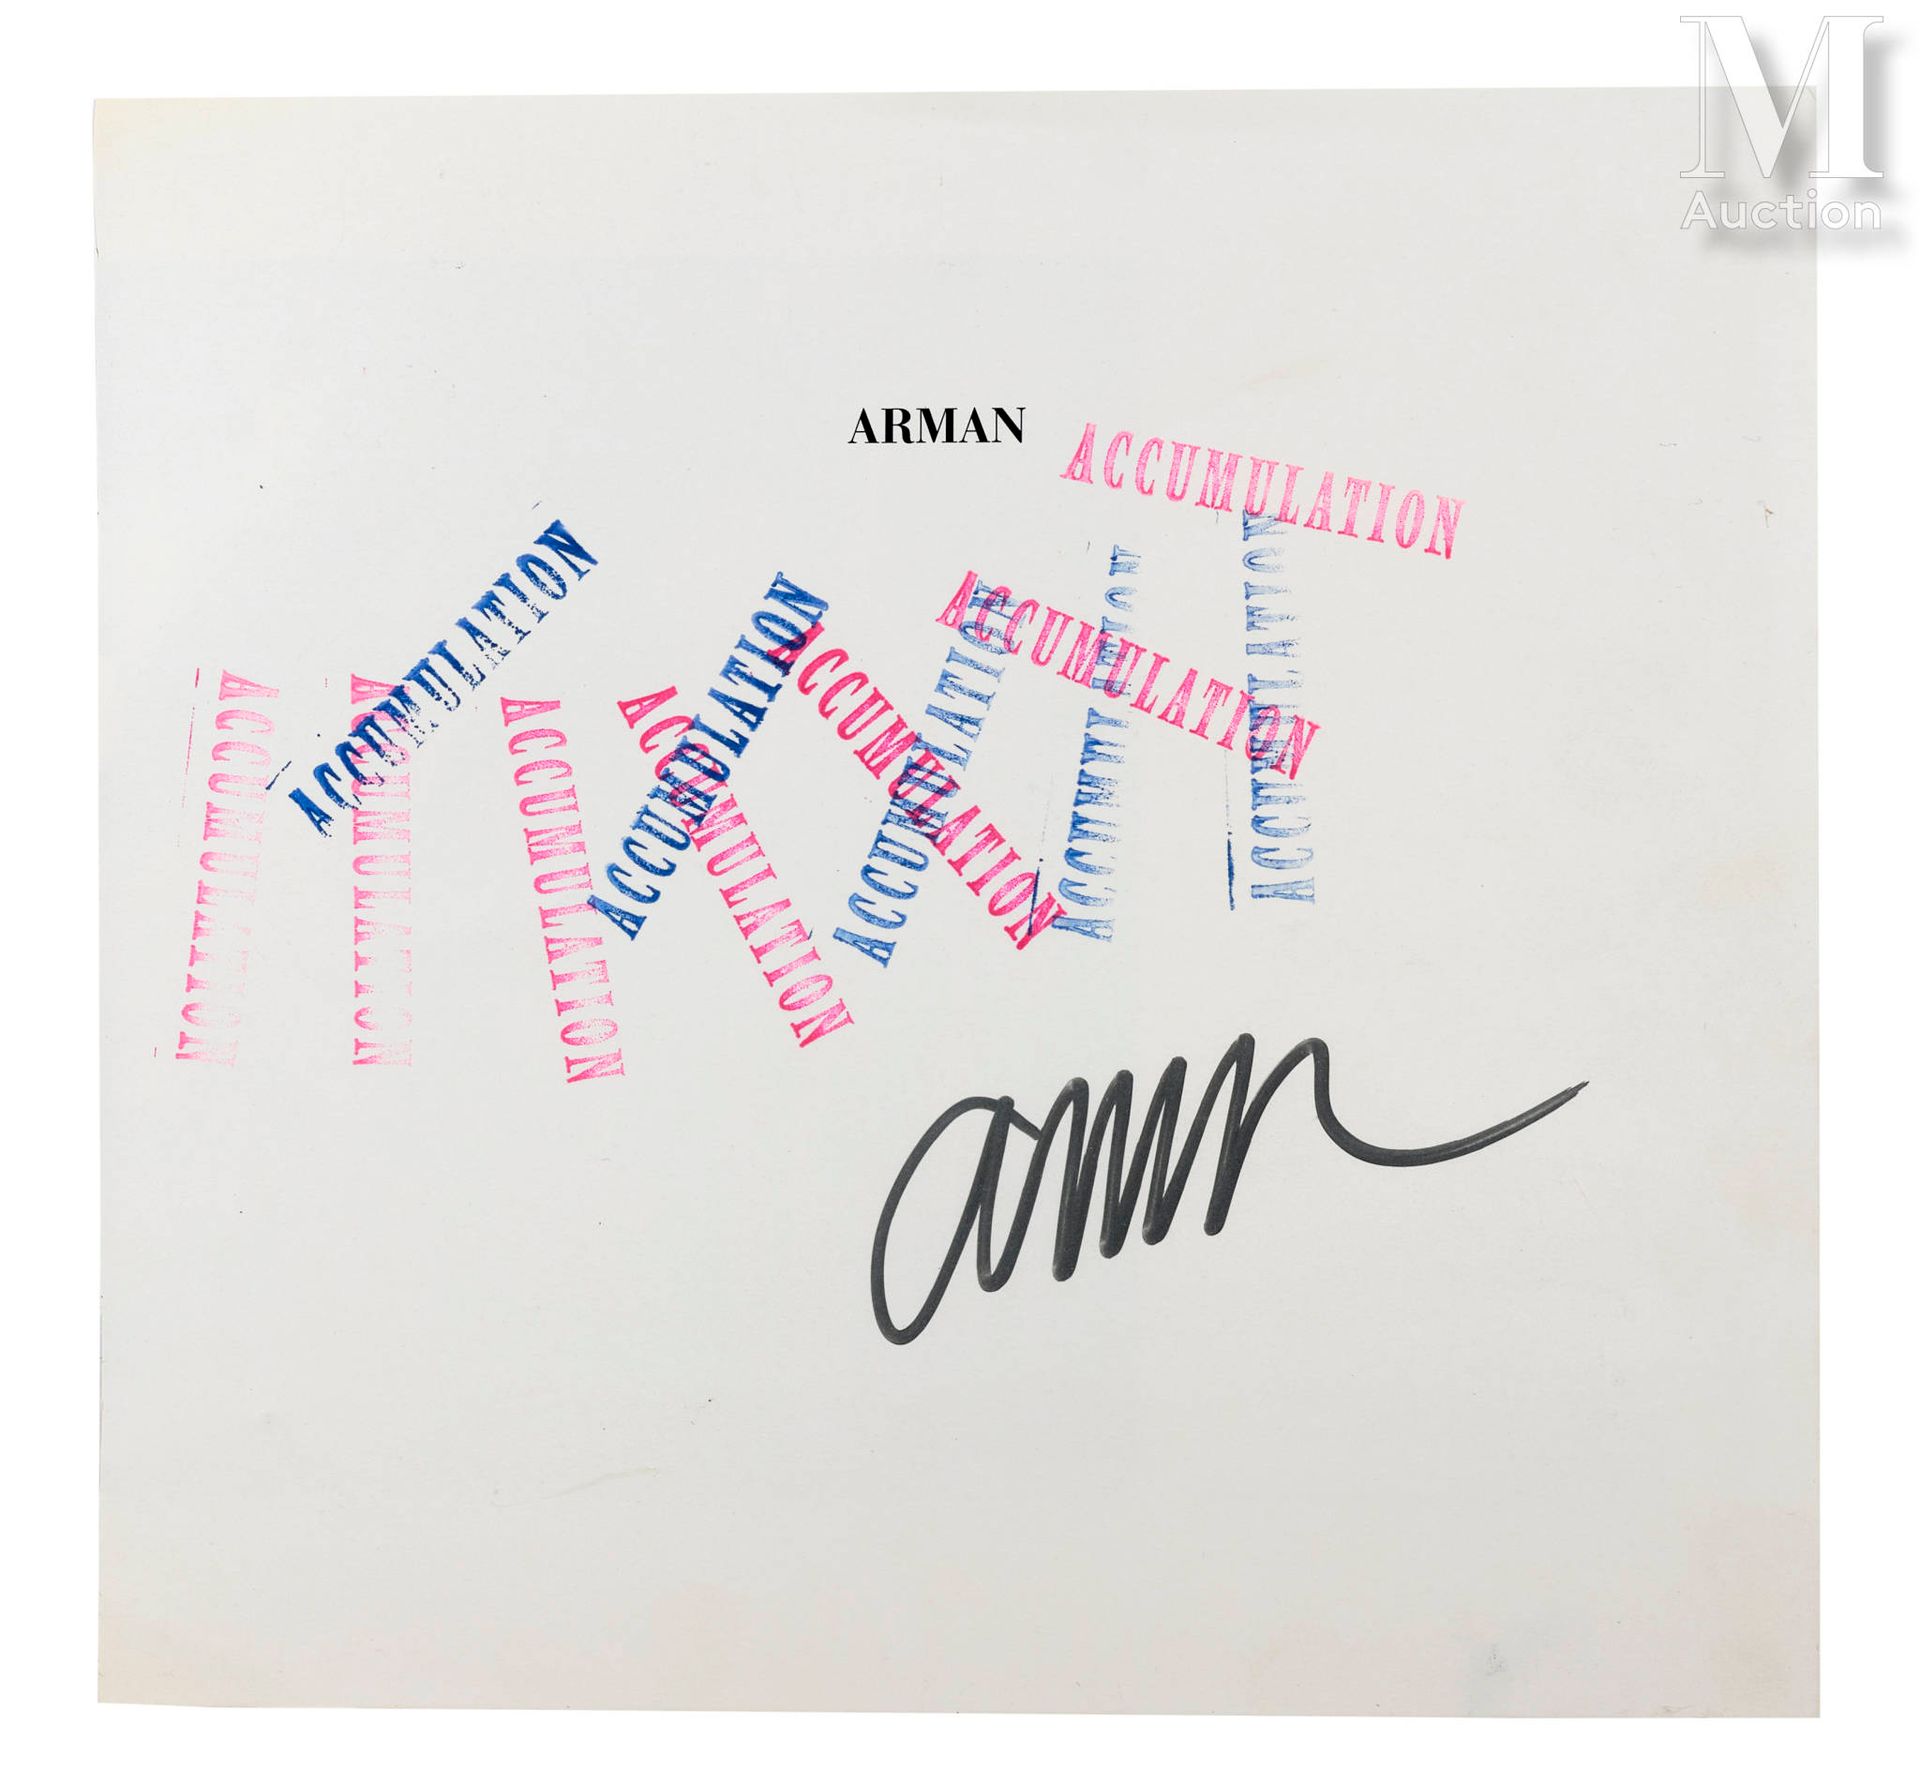 ARMAN (1928-2005) Ansammlung

Stempeldruck auf Papier
27 x 28,5 cm
Signiert unte&hellip;